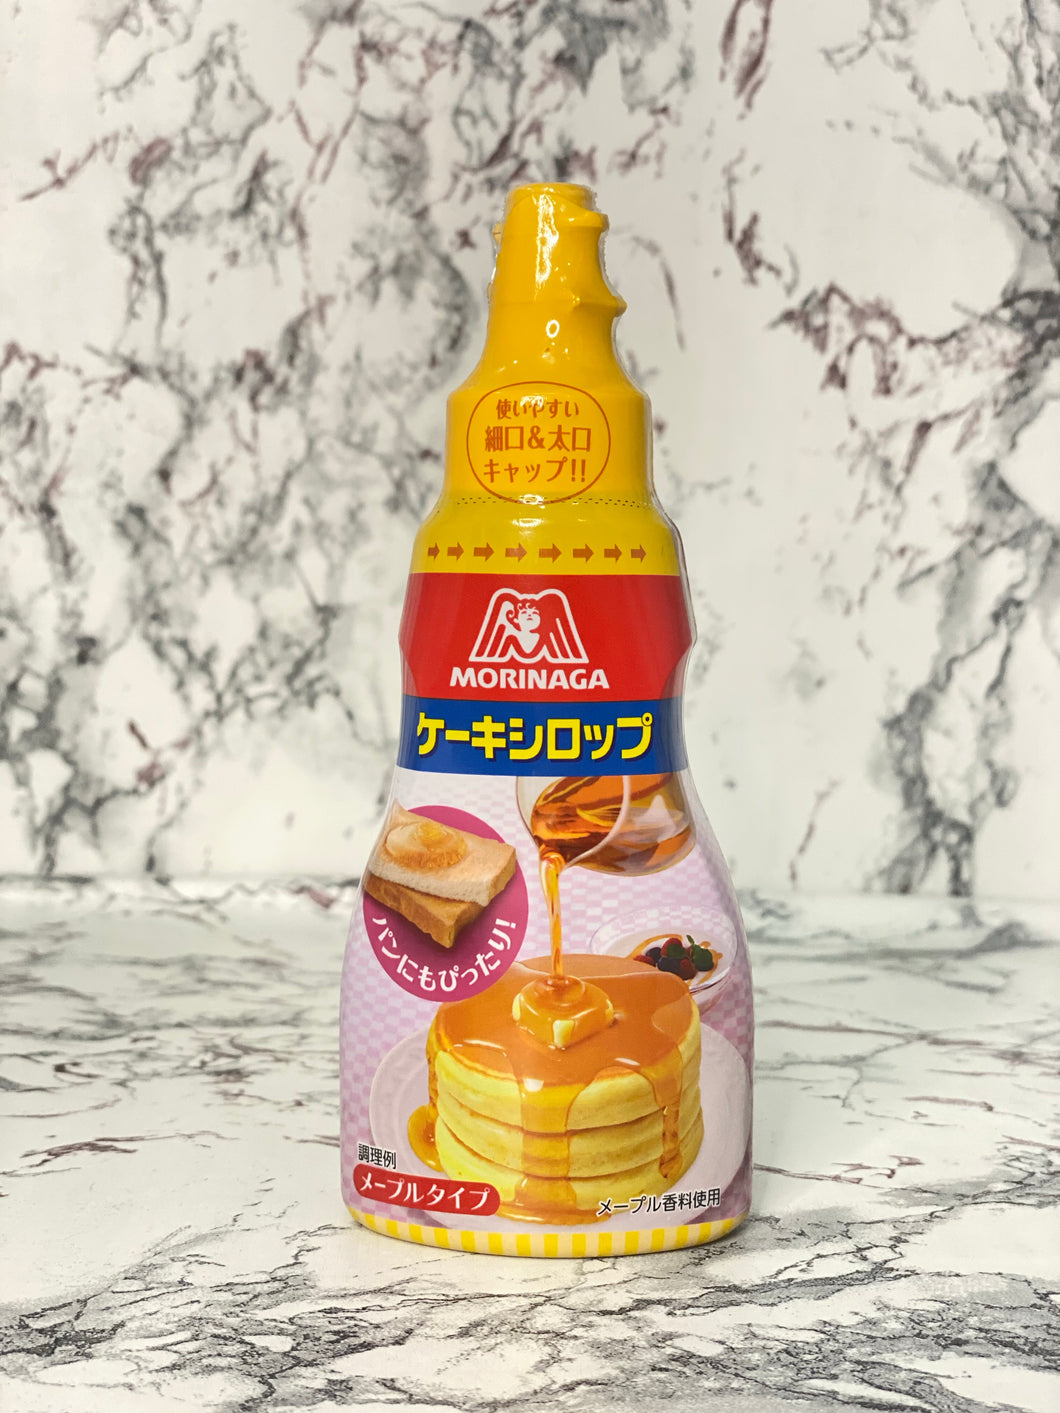 Morinaga Pancake Maple Syrup